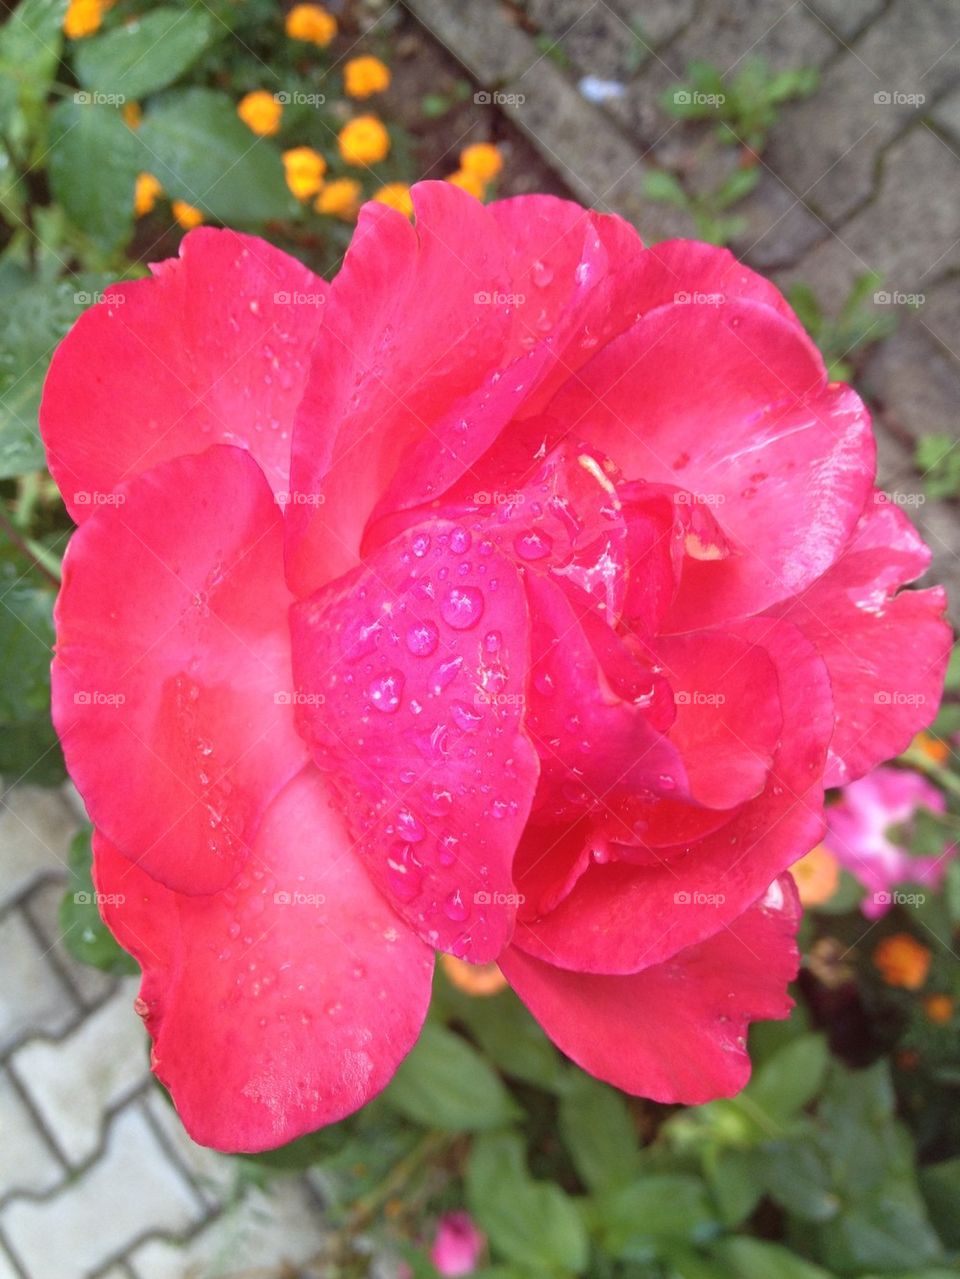 Rain roses